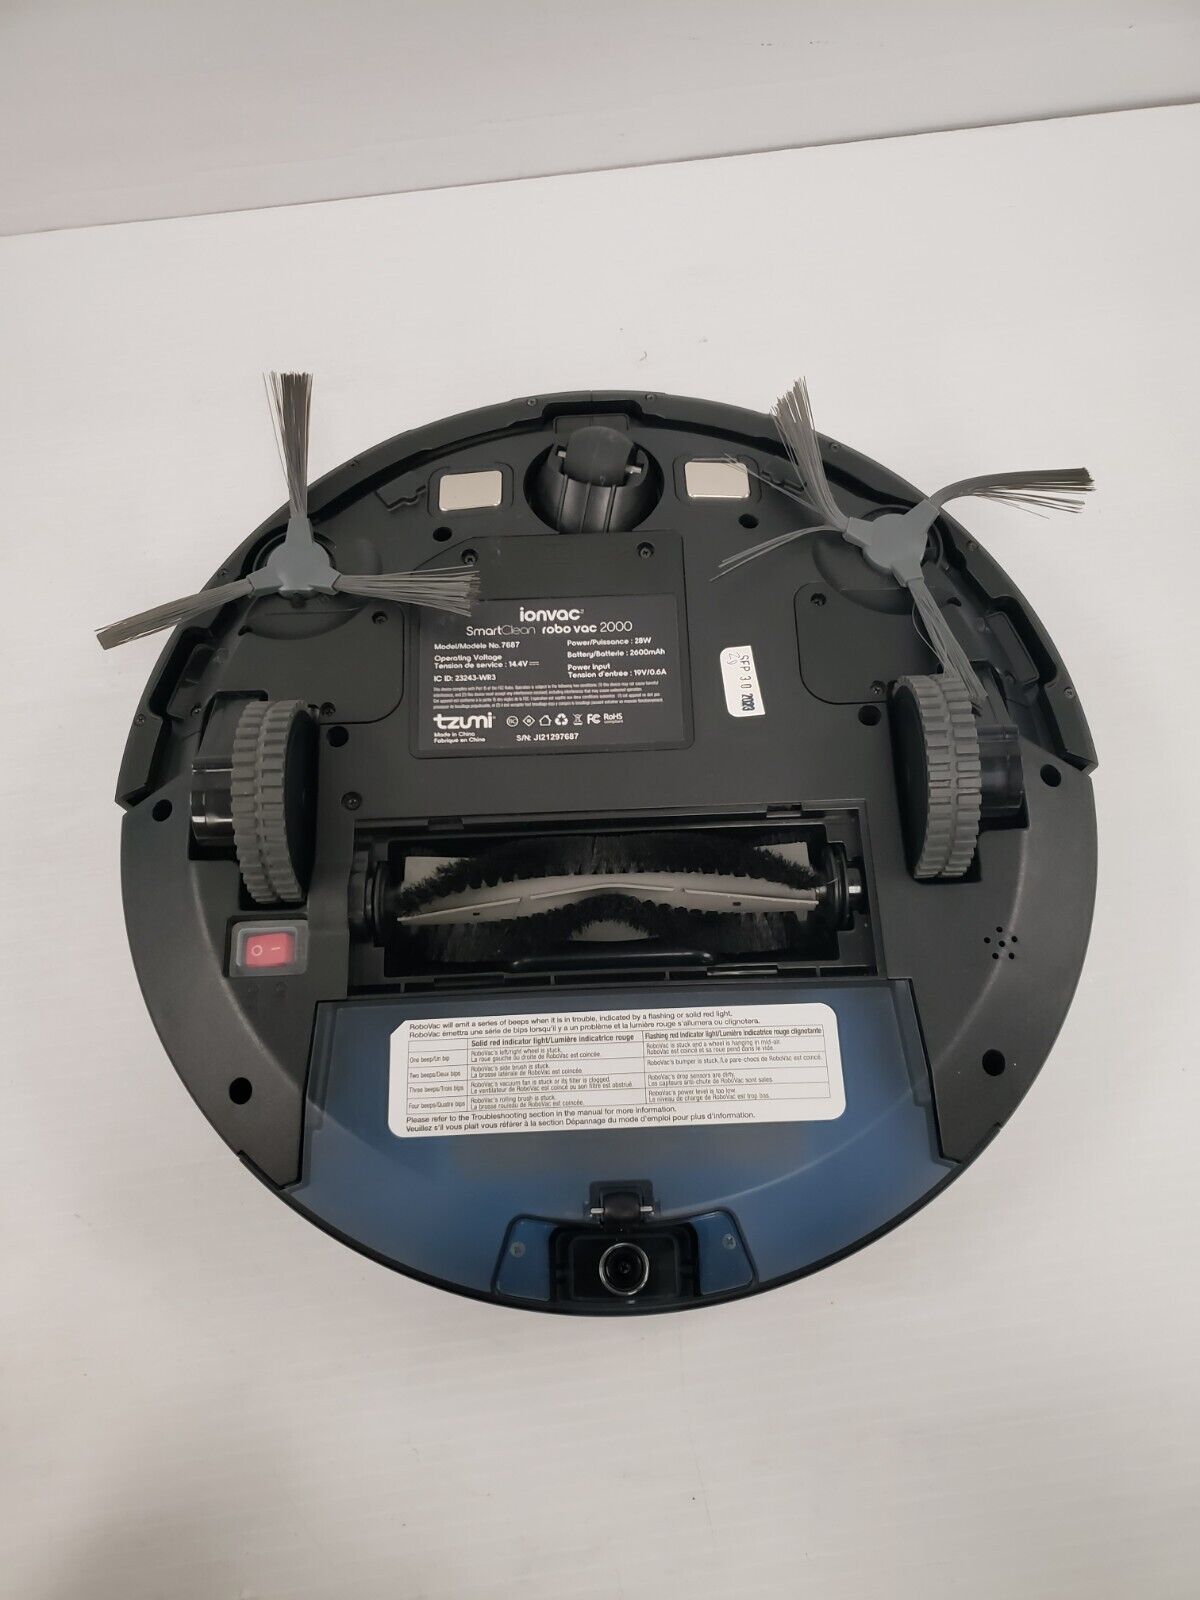 (48697-1) Ionvac 7687 Robotic Vacuum